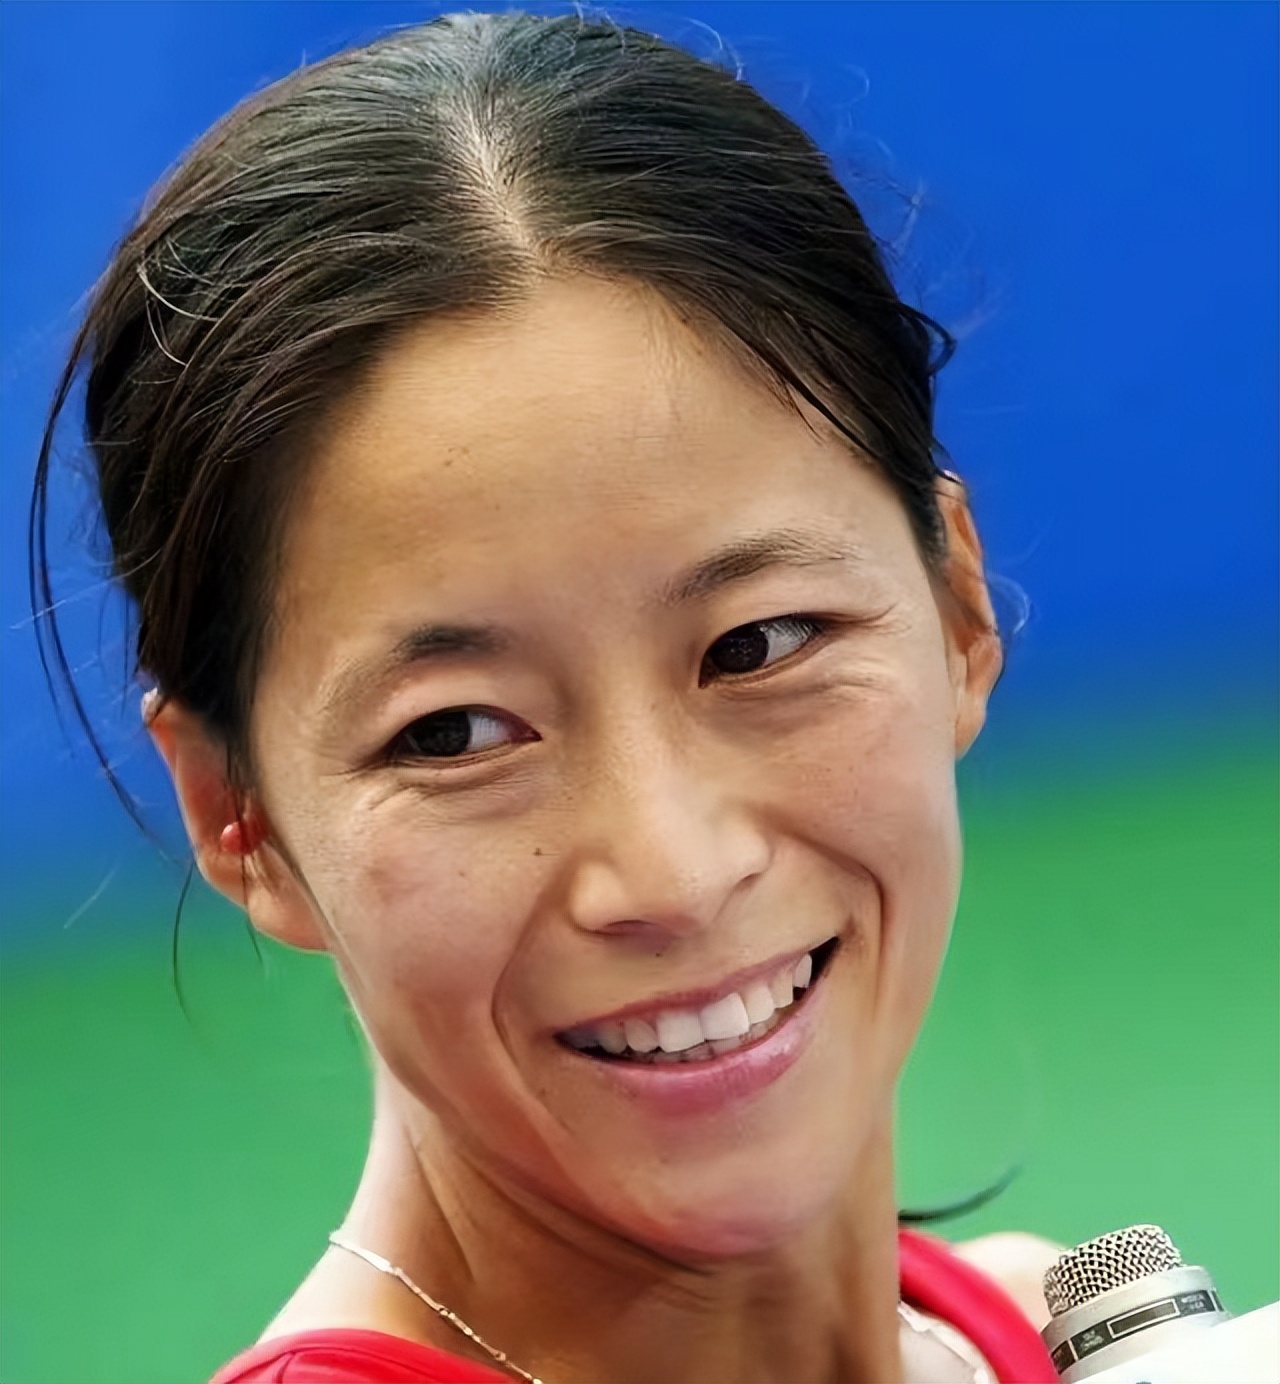 王丽萍竞走夺冠事件追责(她是被遗忘的奥运冠军,夺冠后教练消失,无